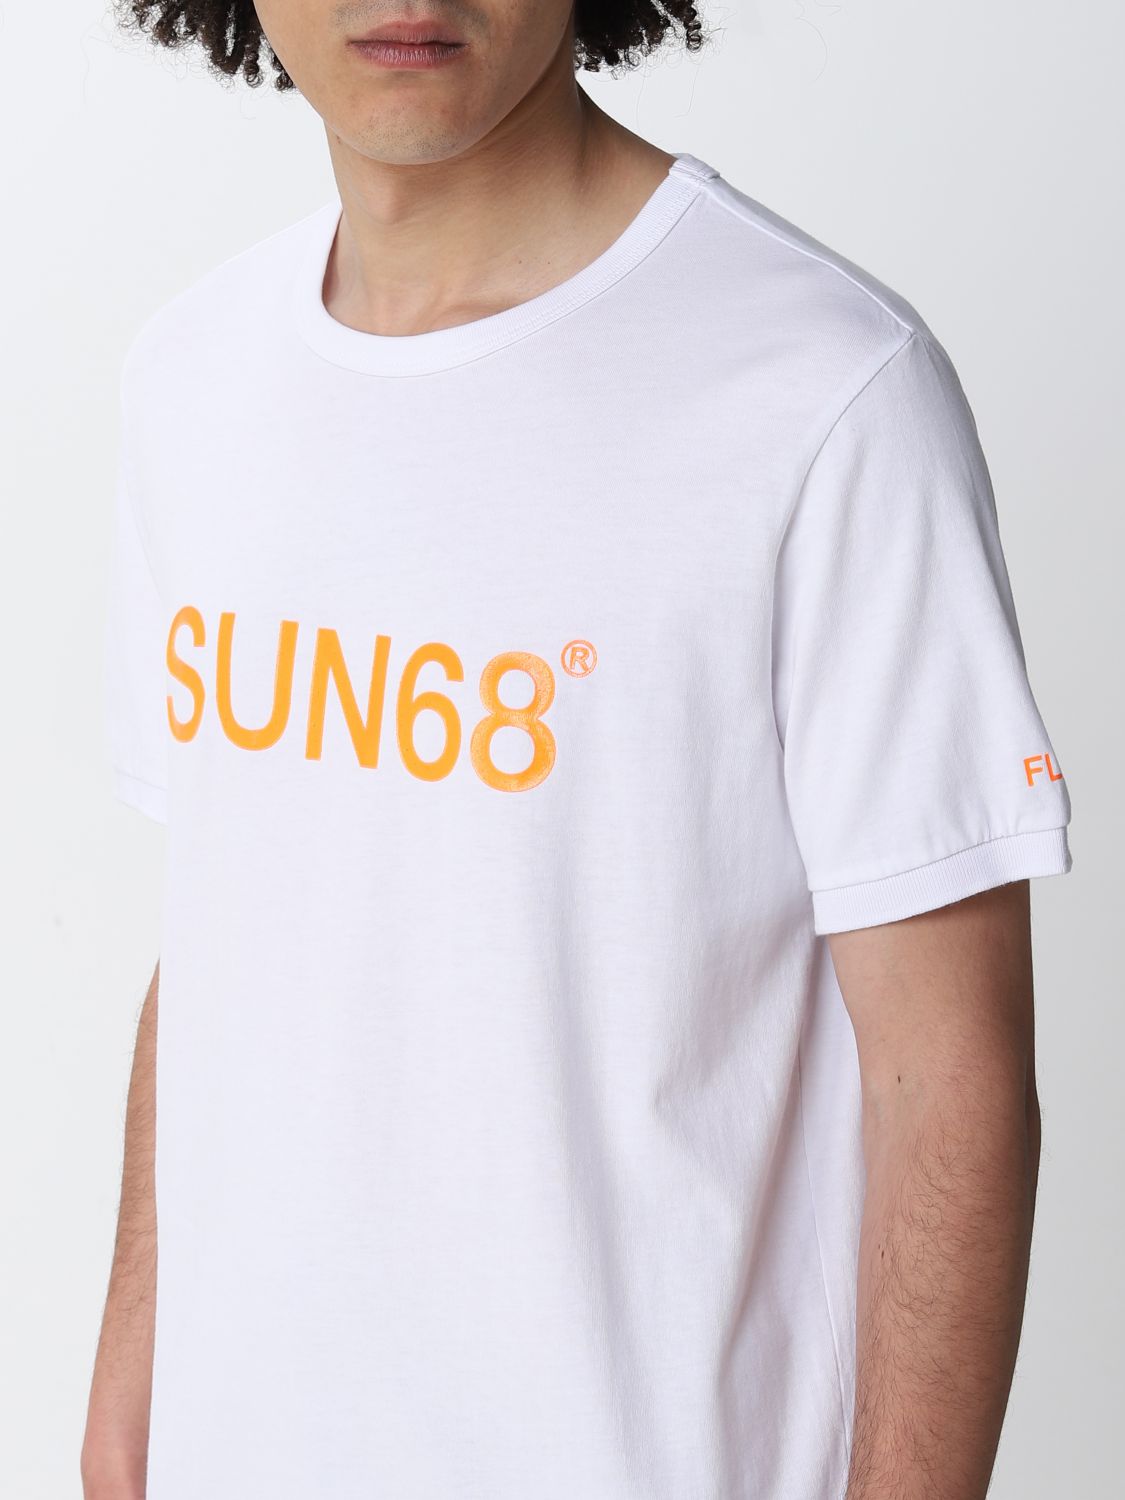 Tシャツ Sun 68: Tシャツ Sun 68 メンズ ホワイト 3